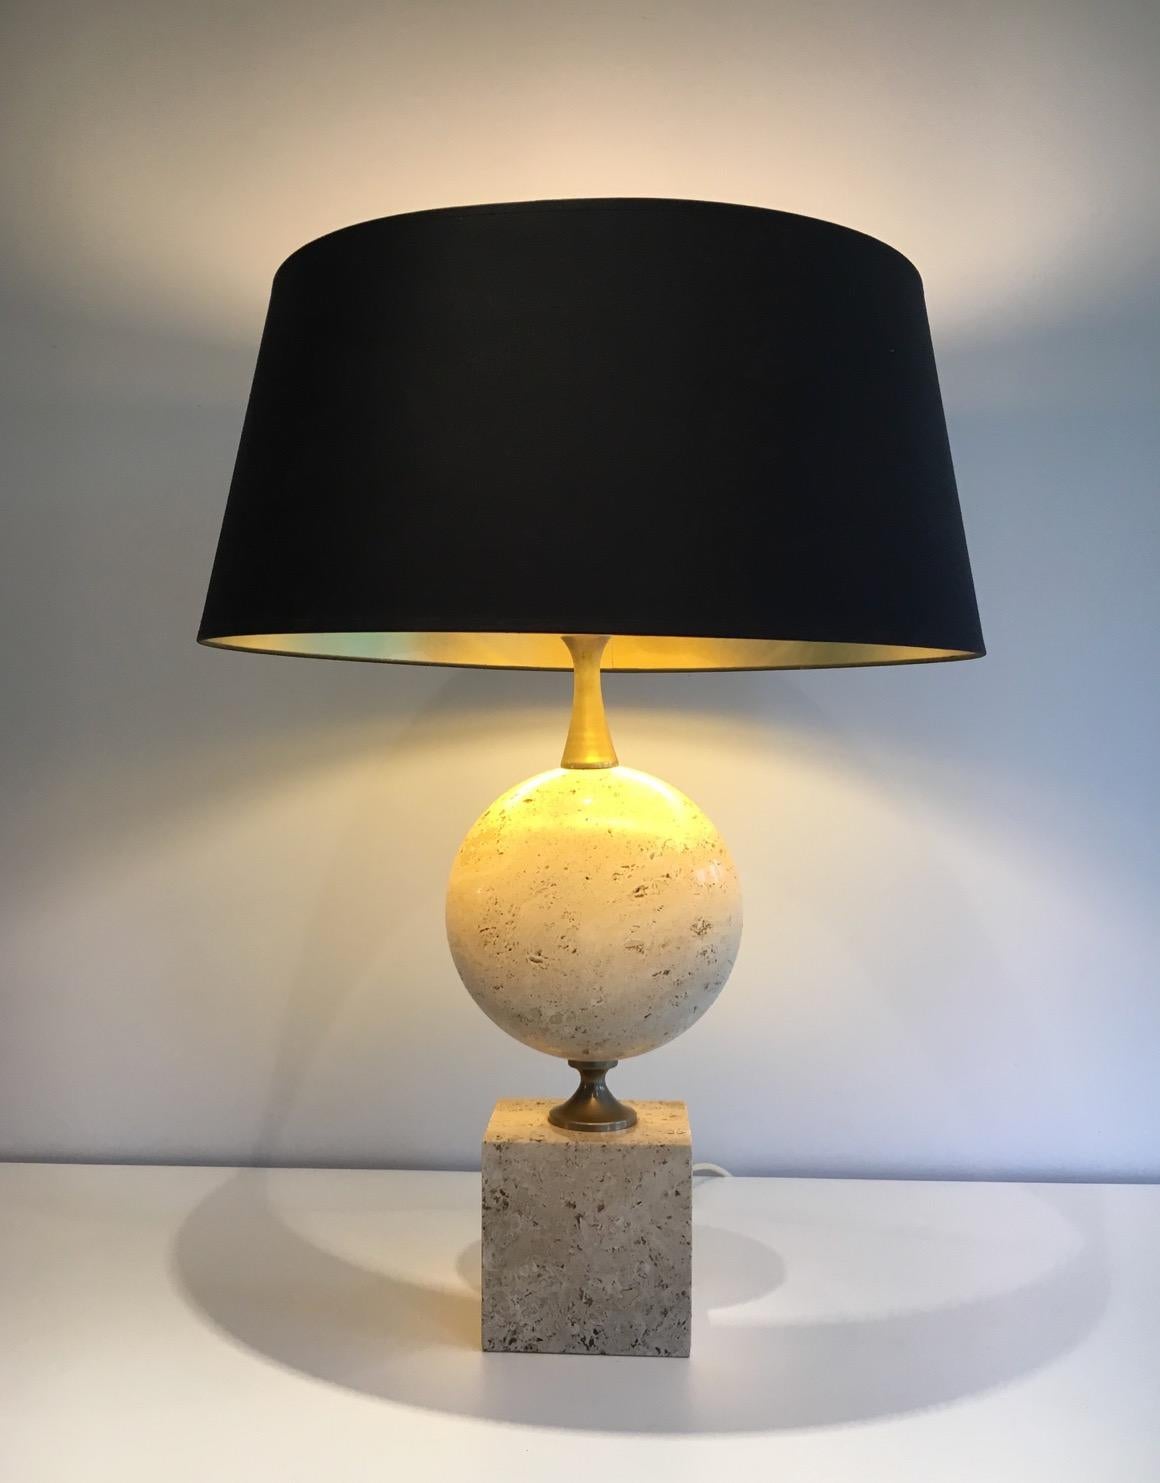 Cette belle et grande lampe est faite de travertin et de chrome. C'est un modèle très intéressant, peu commun par sa taille... Cette lampe est l'œuvre du célèbre designer français Philippe Barbier, vers 1960.
Nous avons une paire de ces lampes.